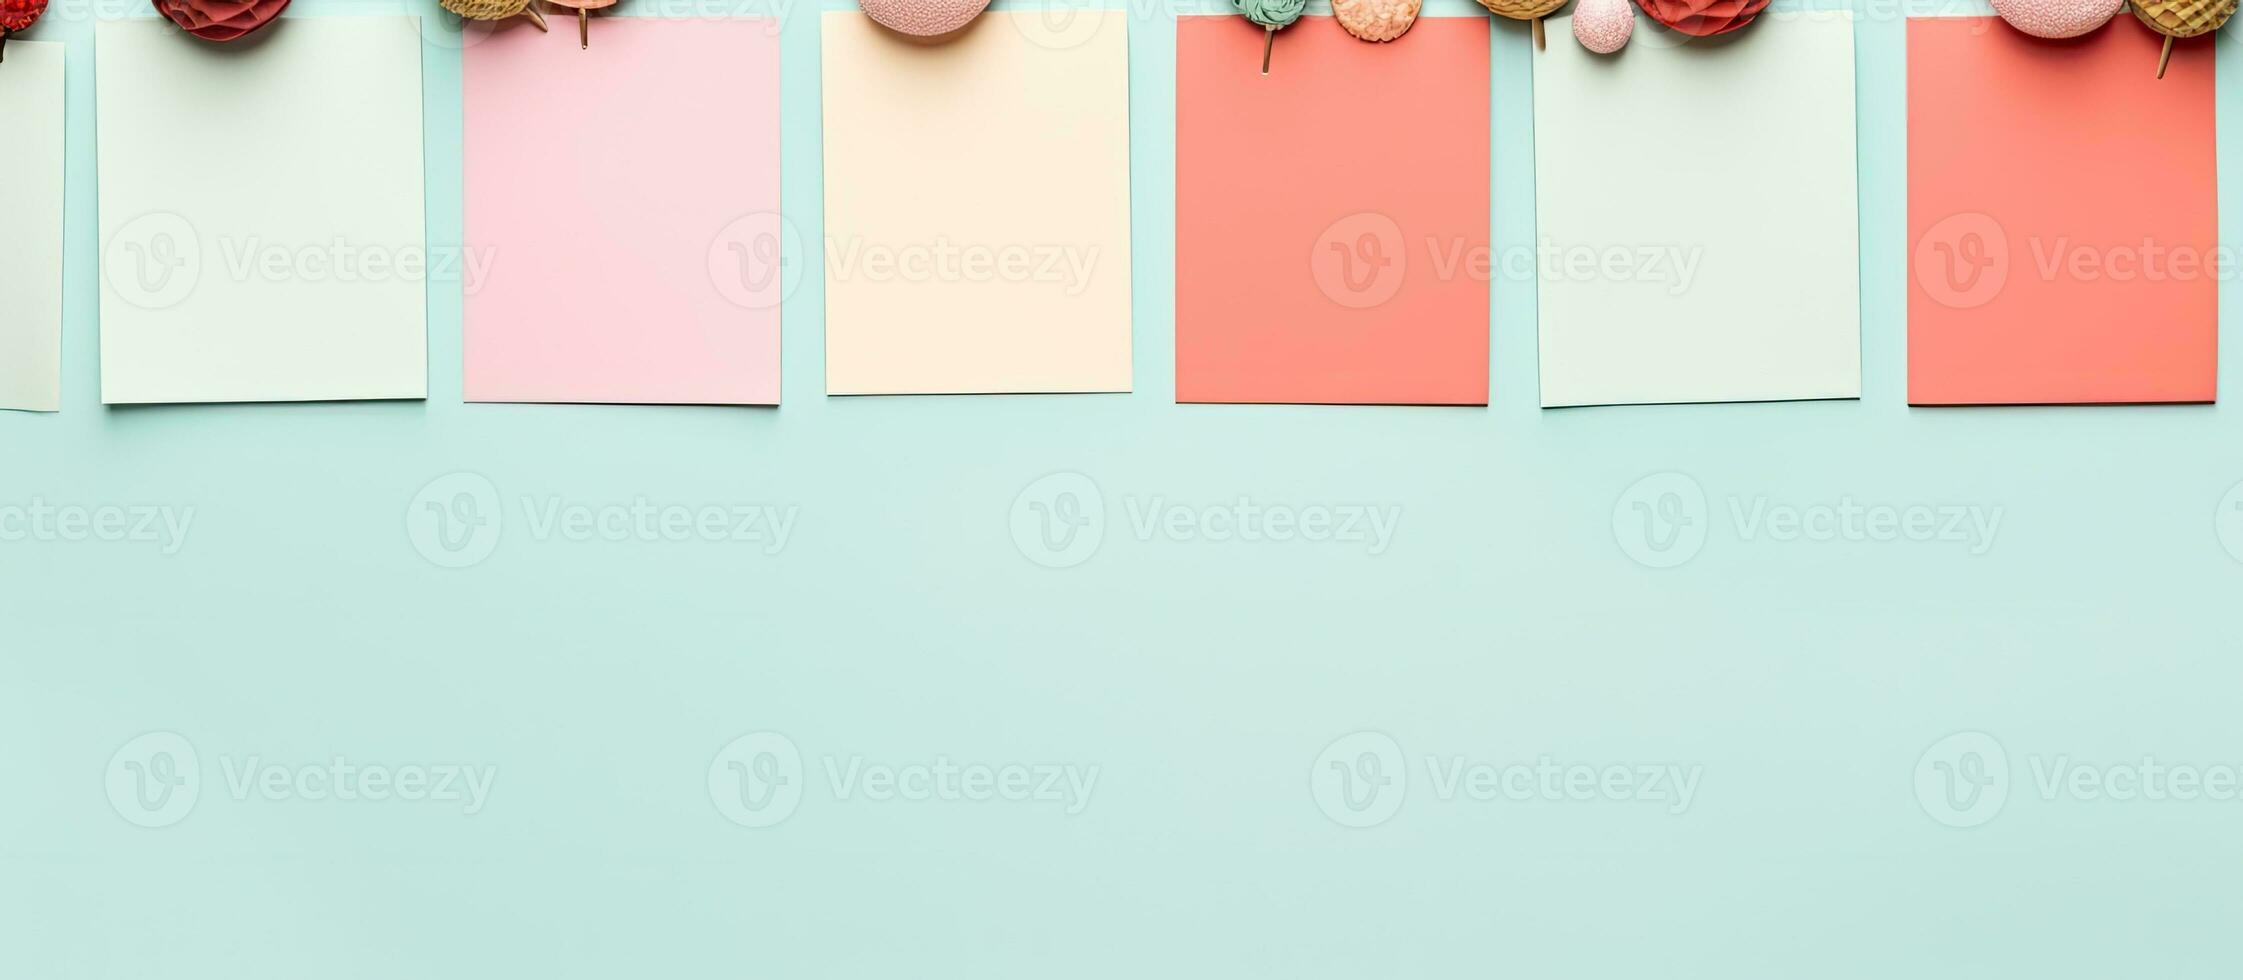 foto van kleurrijk hart vormig papier in een rij, perfect voor toevoegen uw eigen bericht of ontwerp met kopiëren ruimte